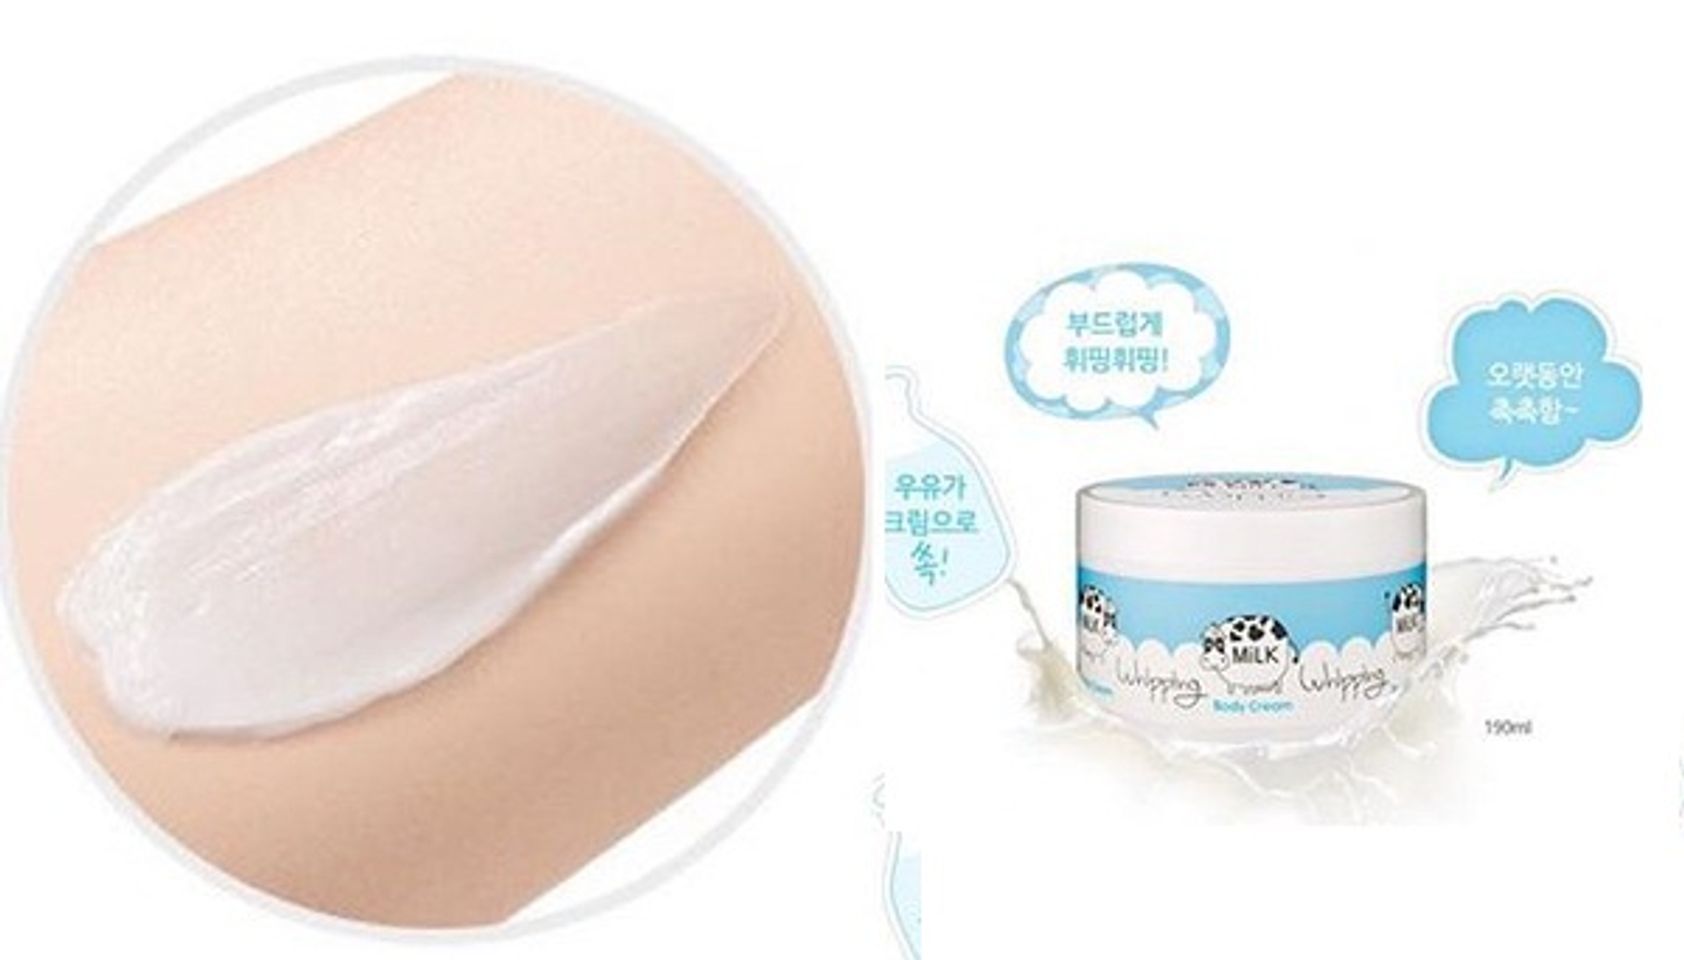 Chất kem dưỡng trắng Milk Whipping Body Cream A’pieu mềm mượt, thấm tốt trên da và cho cảm giác thật ẩm mượt